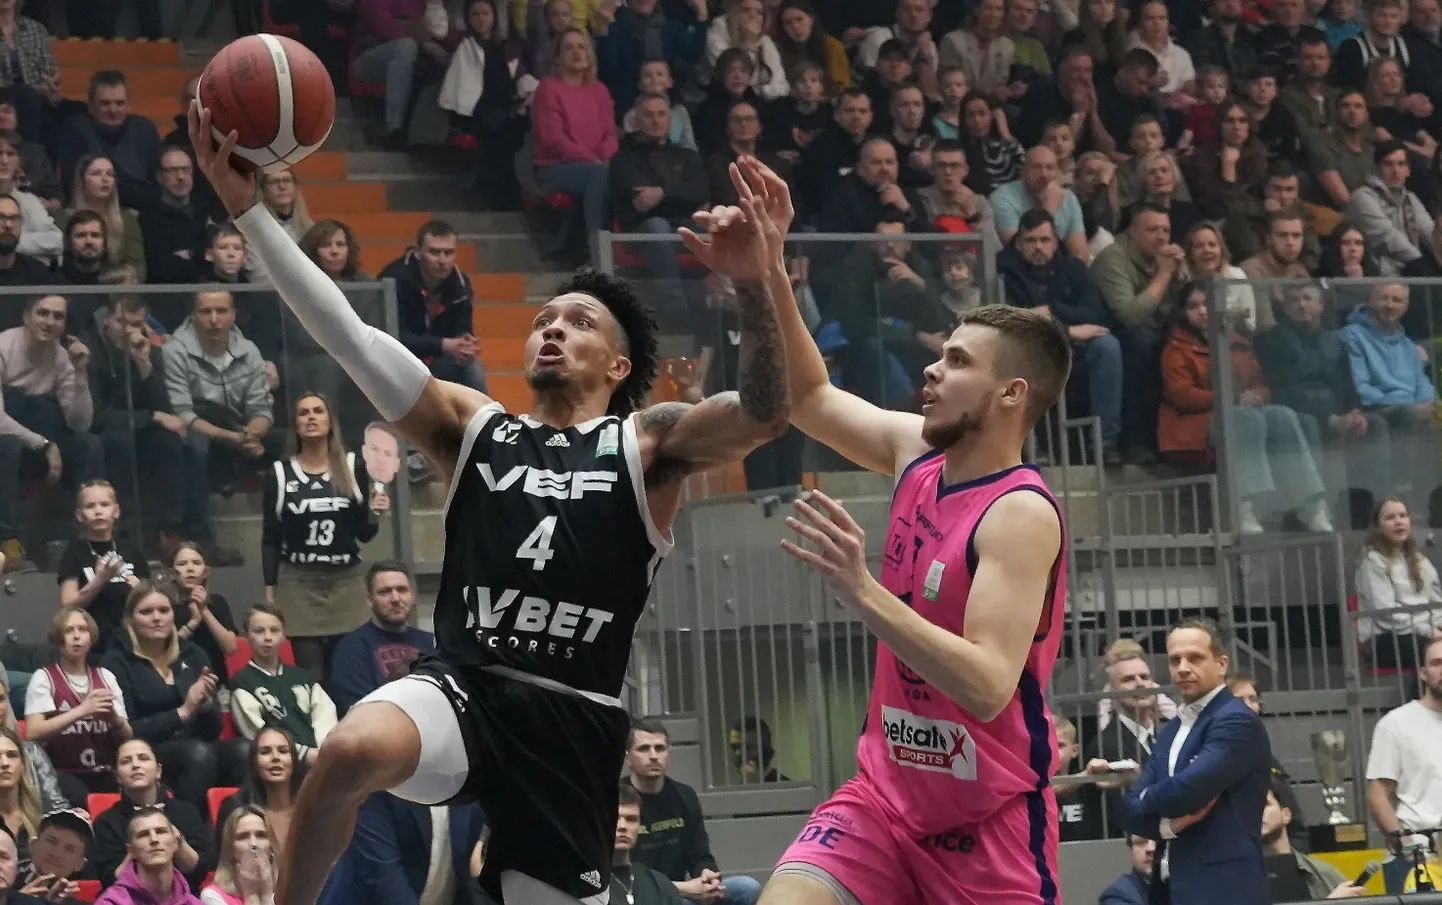 "Užavas" Latvijas kausa fināla spēle basketbolā, kurā tiekas "Rīgas Zeļļi" pret "VEF Rīga" Zemgales Olimpiskajā centrā.